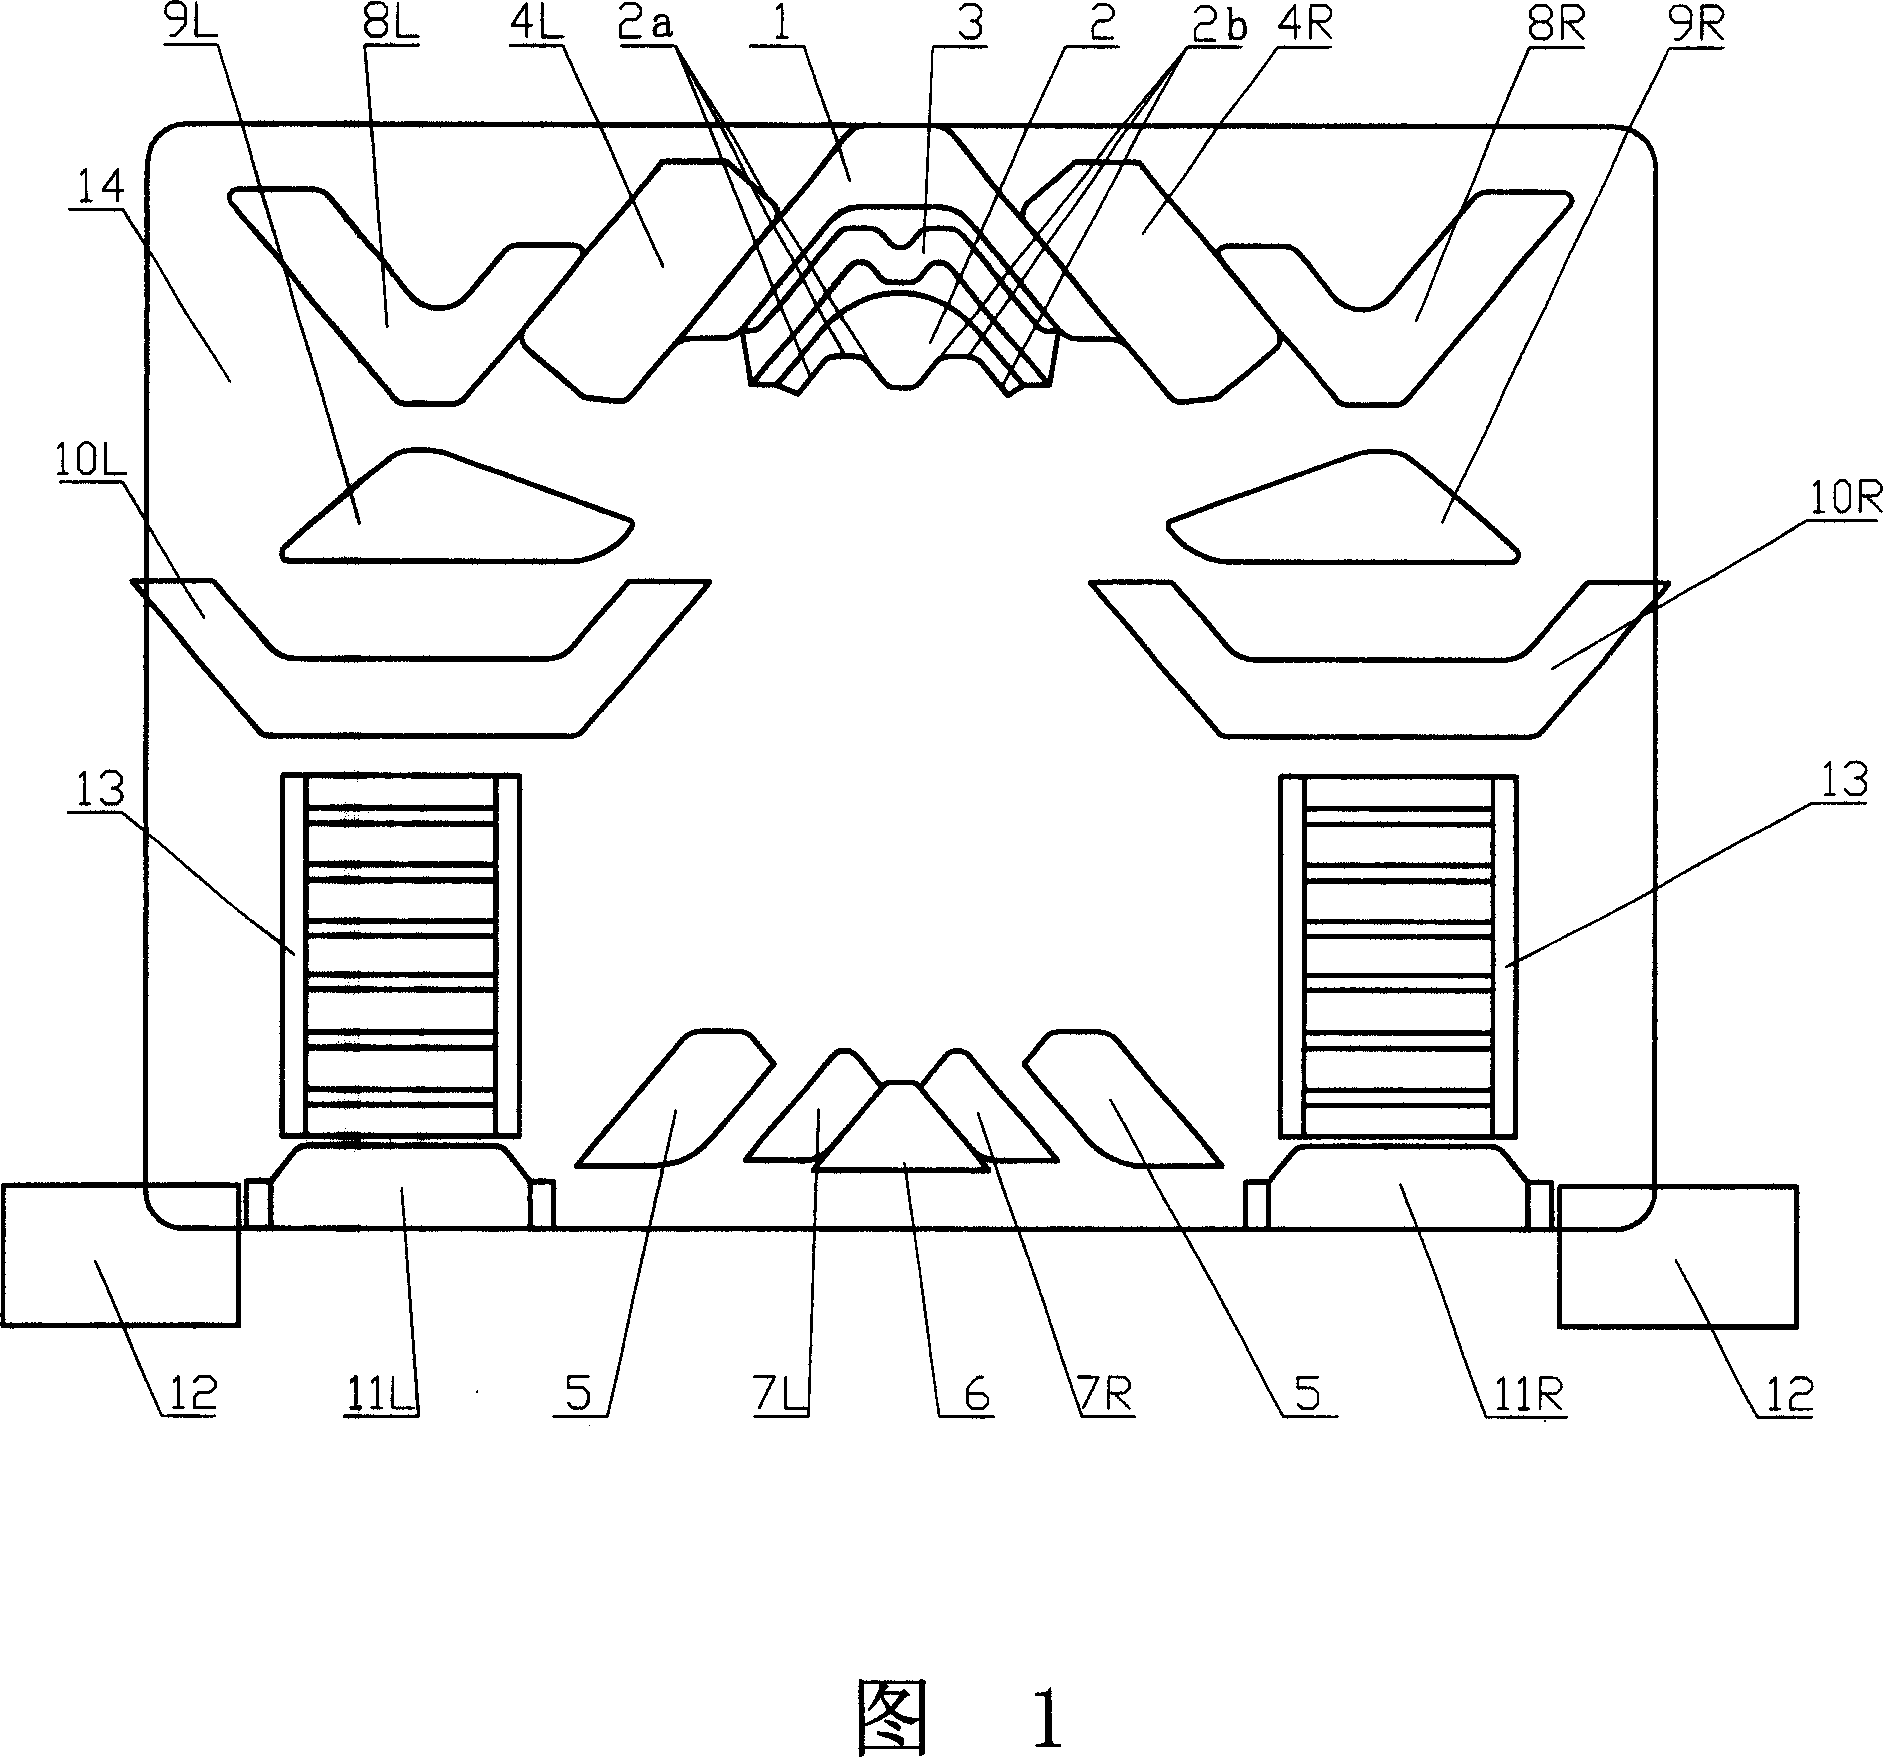 Triangular mechanism for computer flat knitting machine plain flat knitter